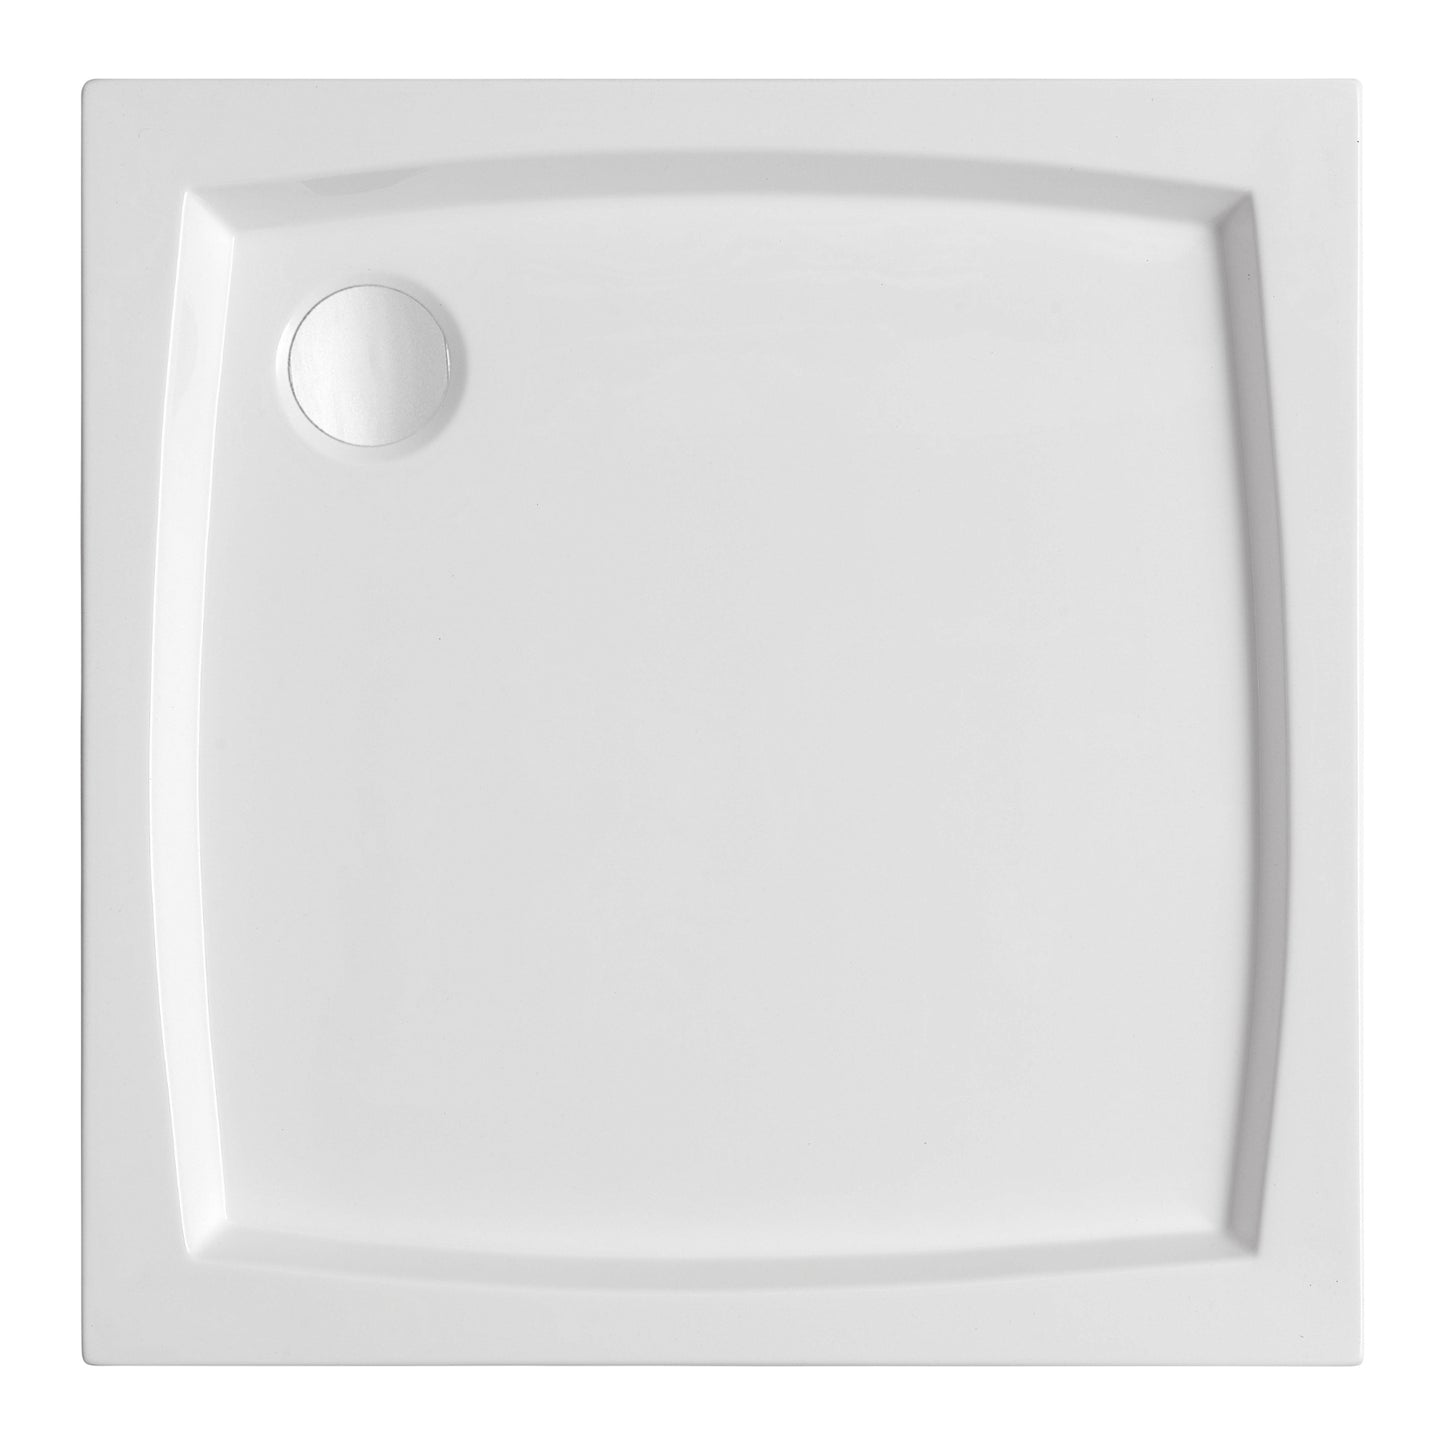 Acrylic square shower base PATIO